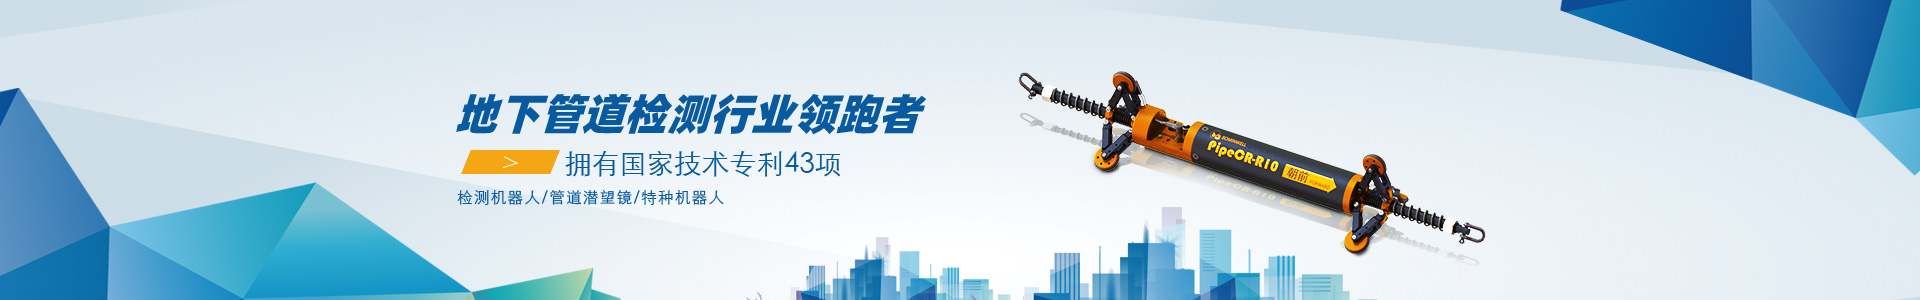 祝贺超声波检漏仪SDT200完美应用于上海轿车集团股份有限公司